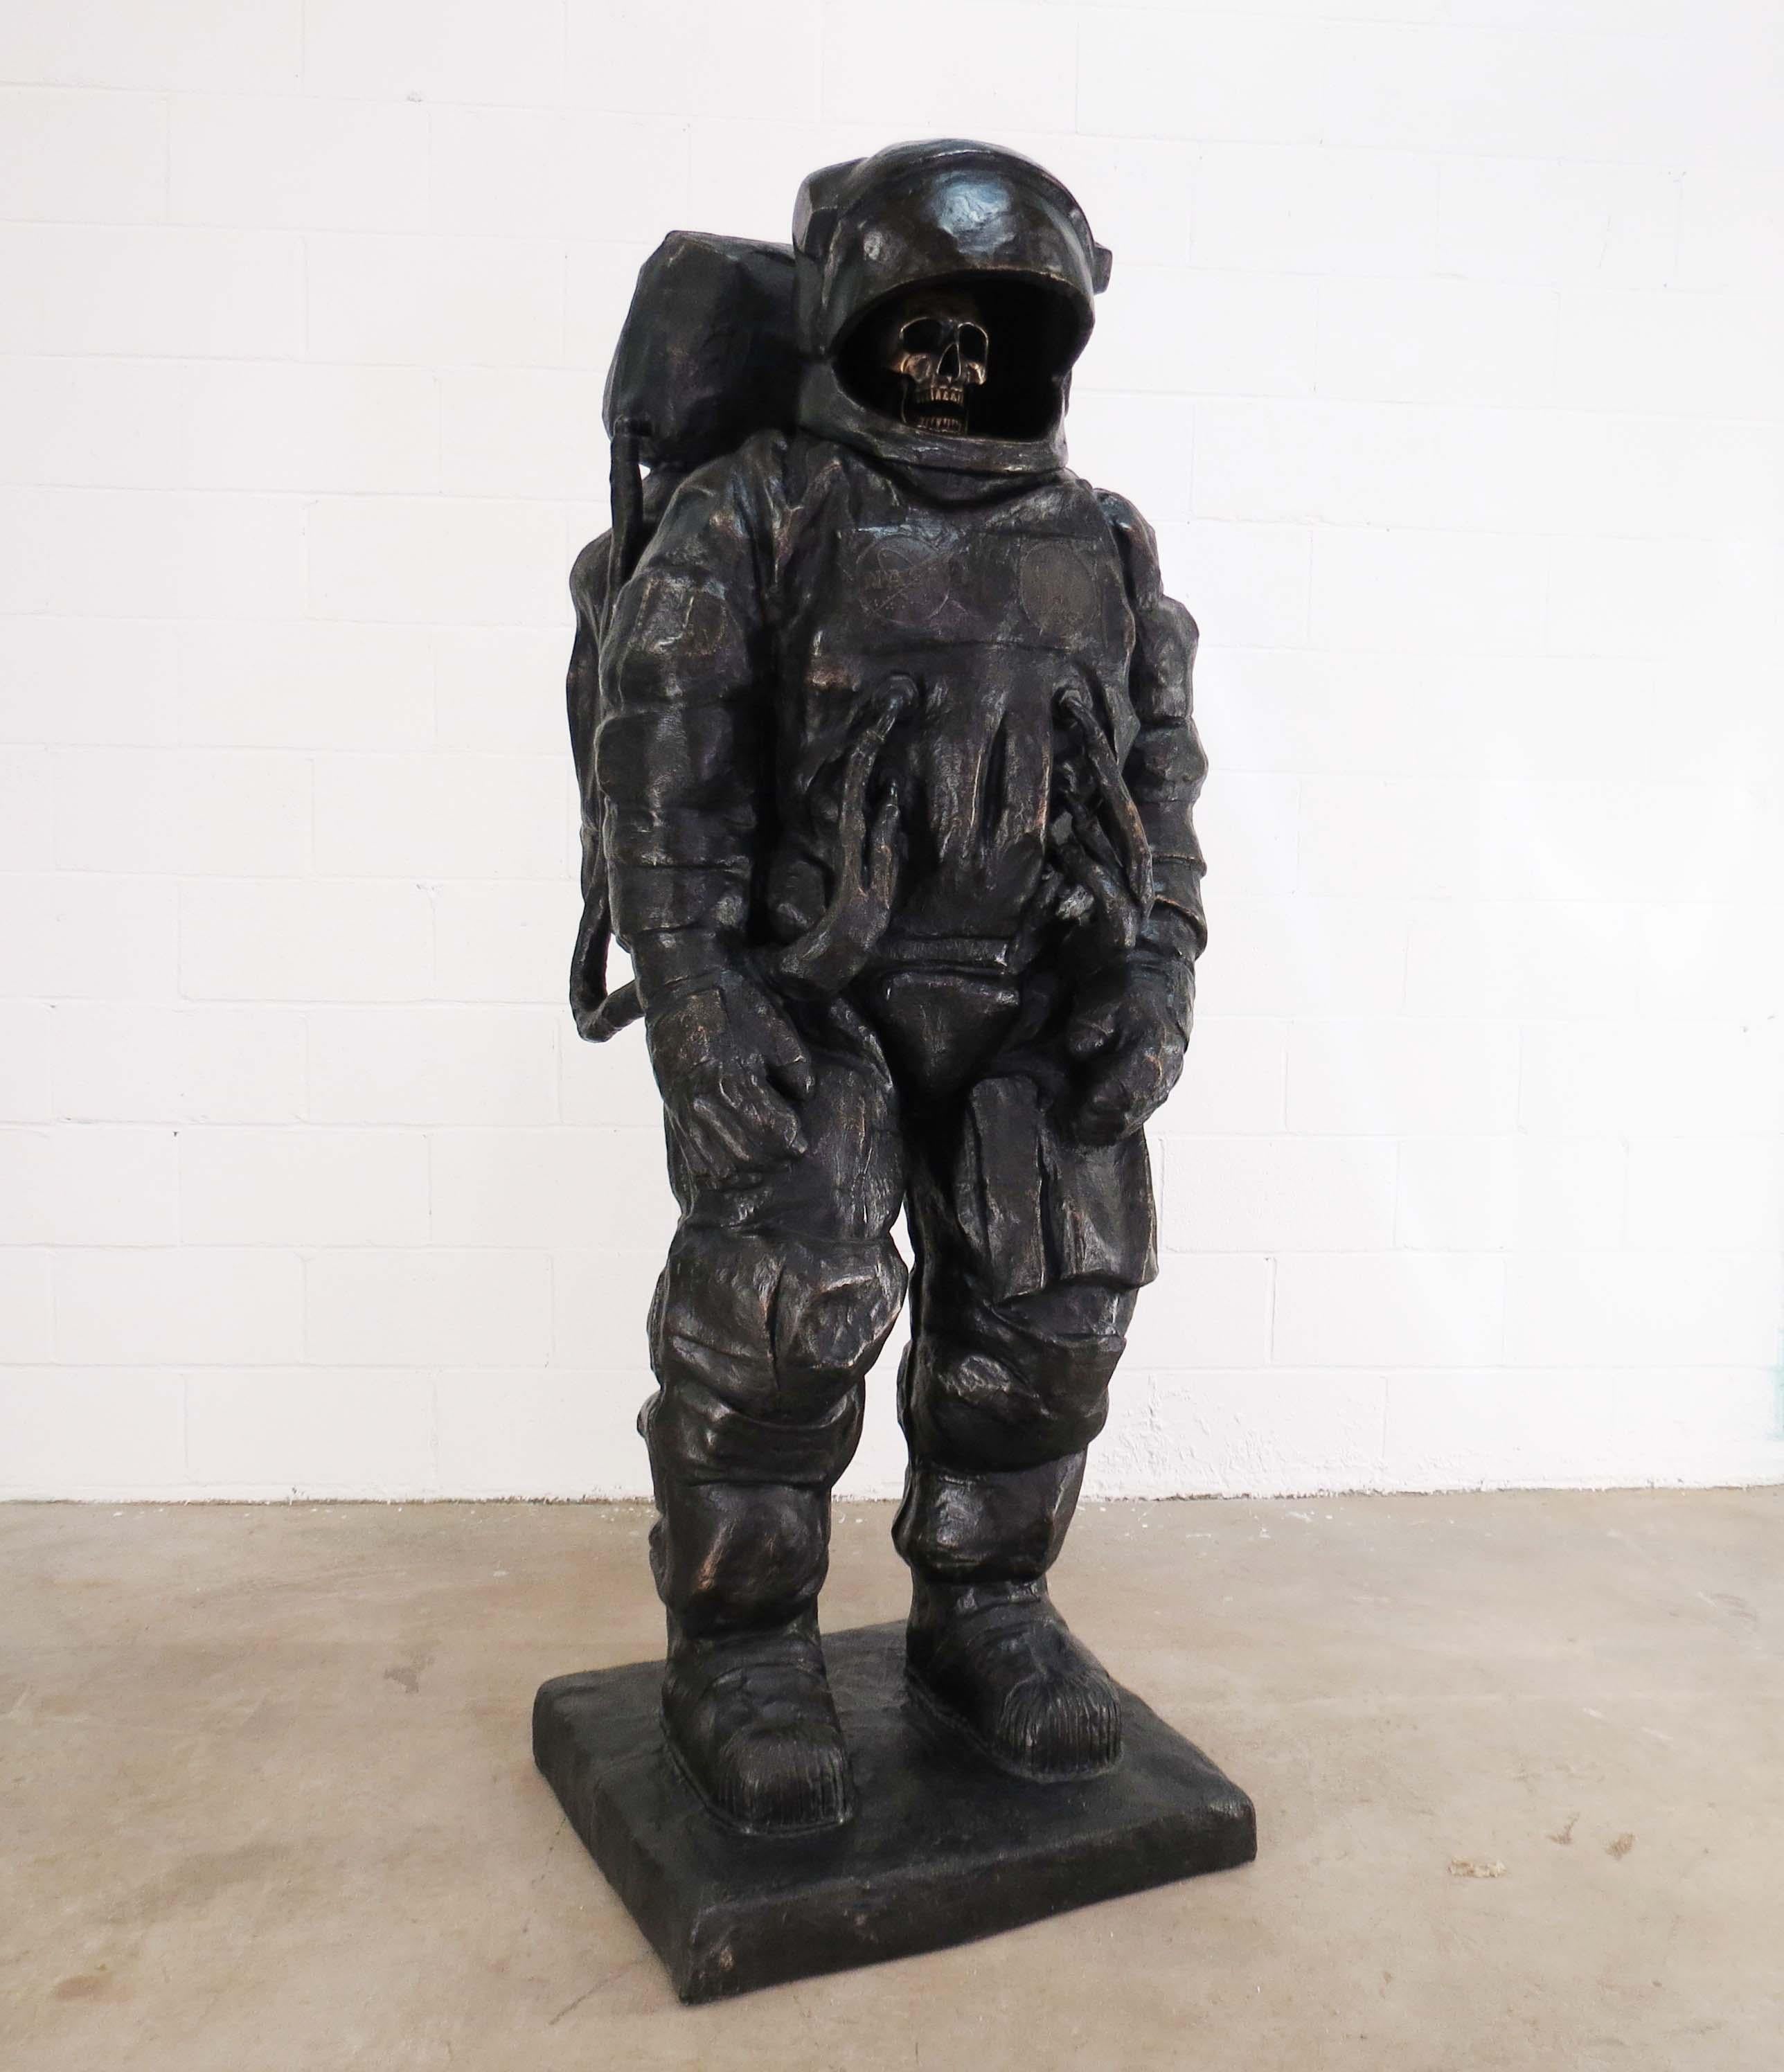 Brandon Vickerd Figurative Sculpture - Oblivion (Dead Astronaut #2)